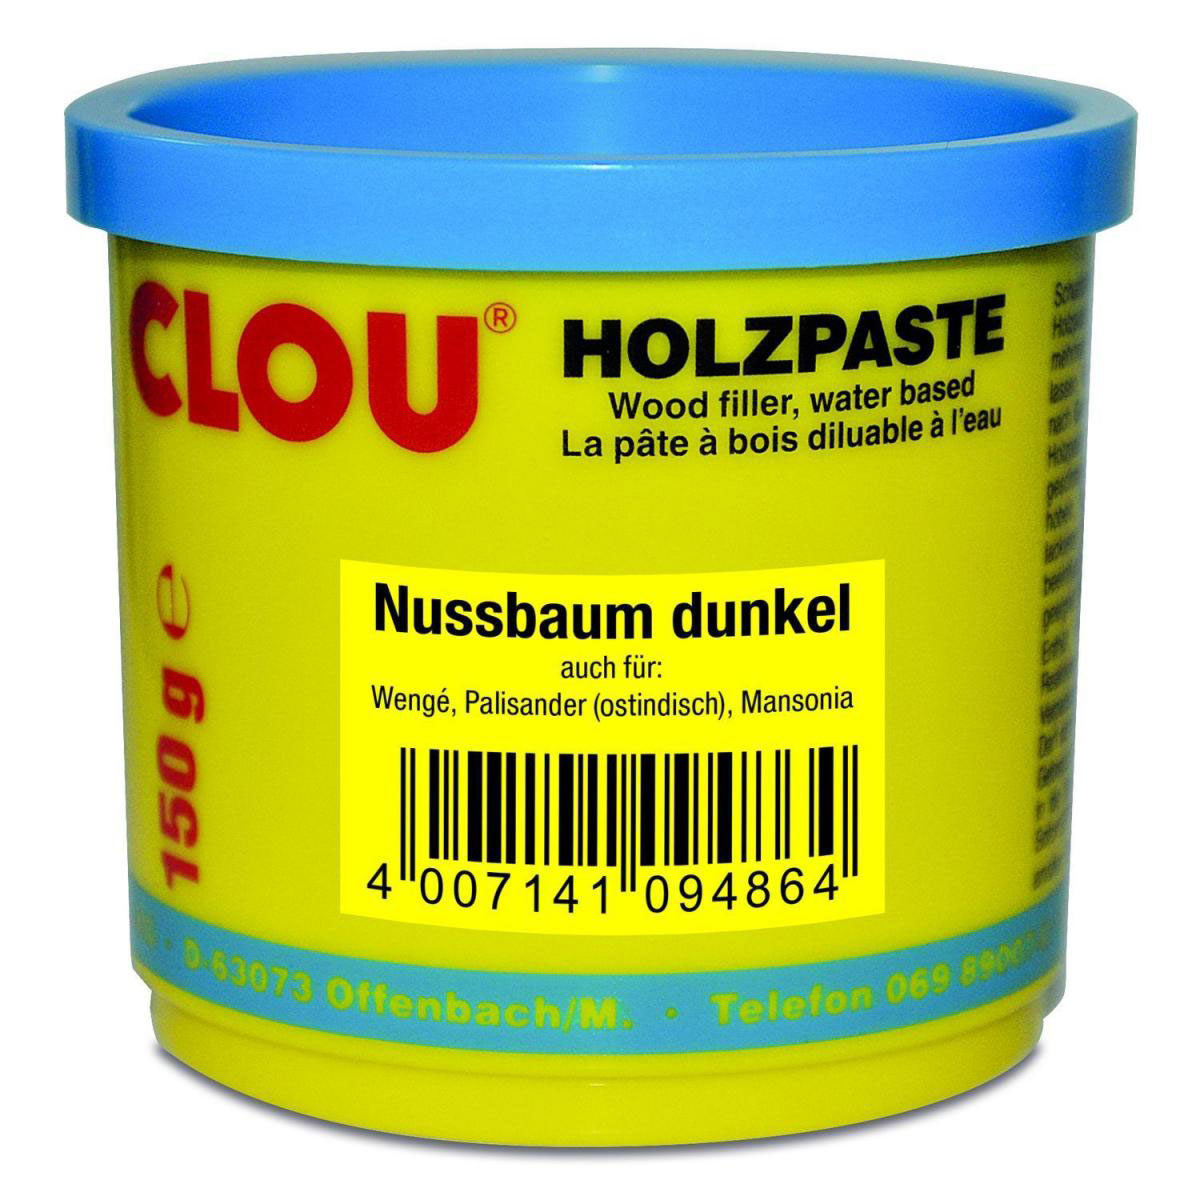 Clou Holzpaste 150 g, Nussbaum dunkel